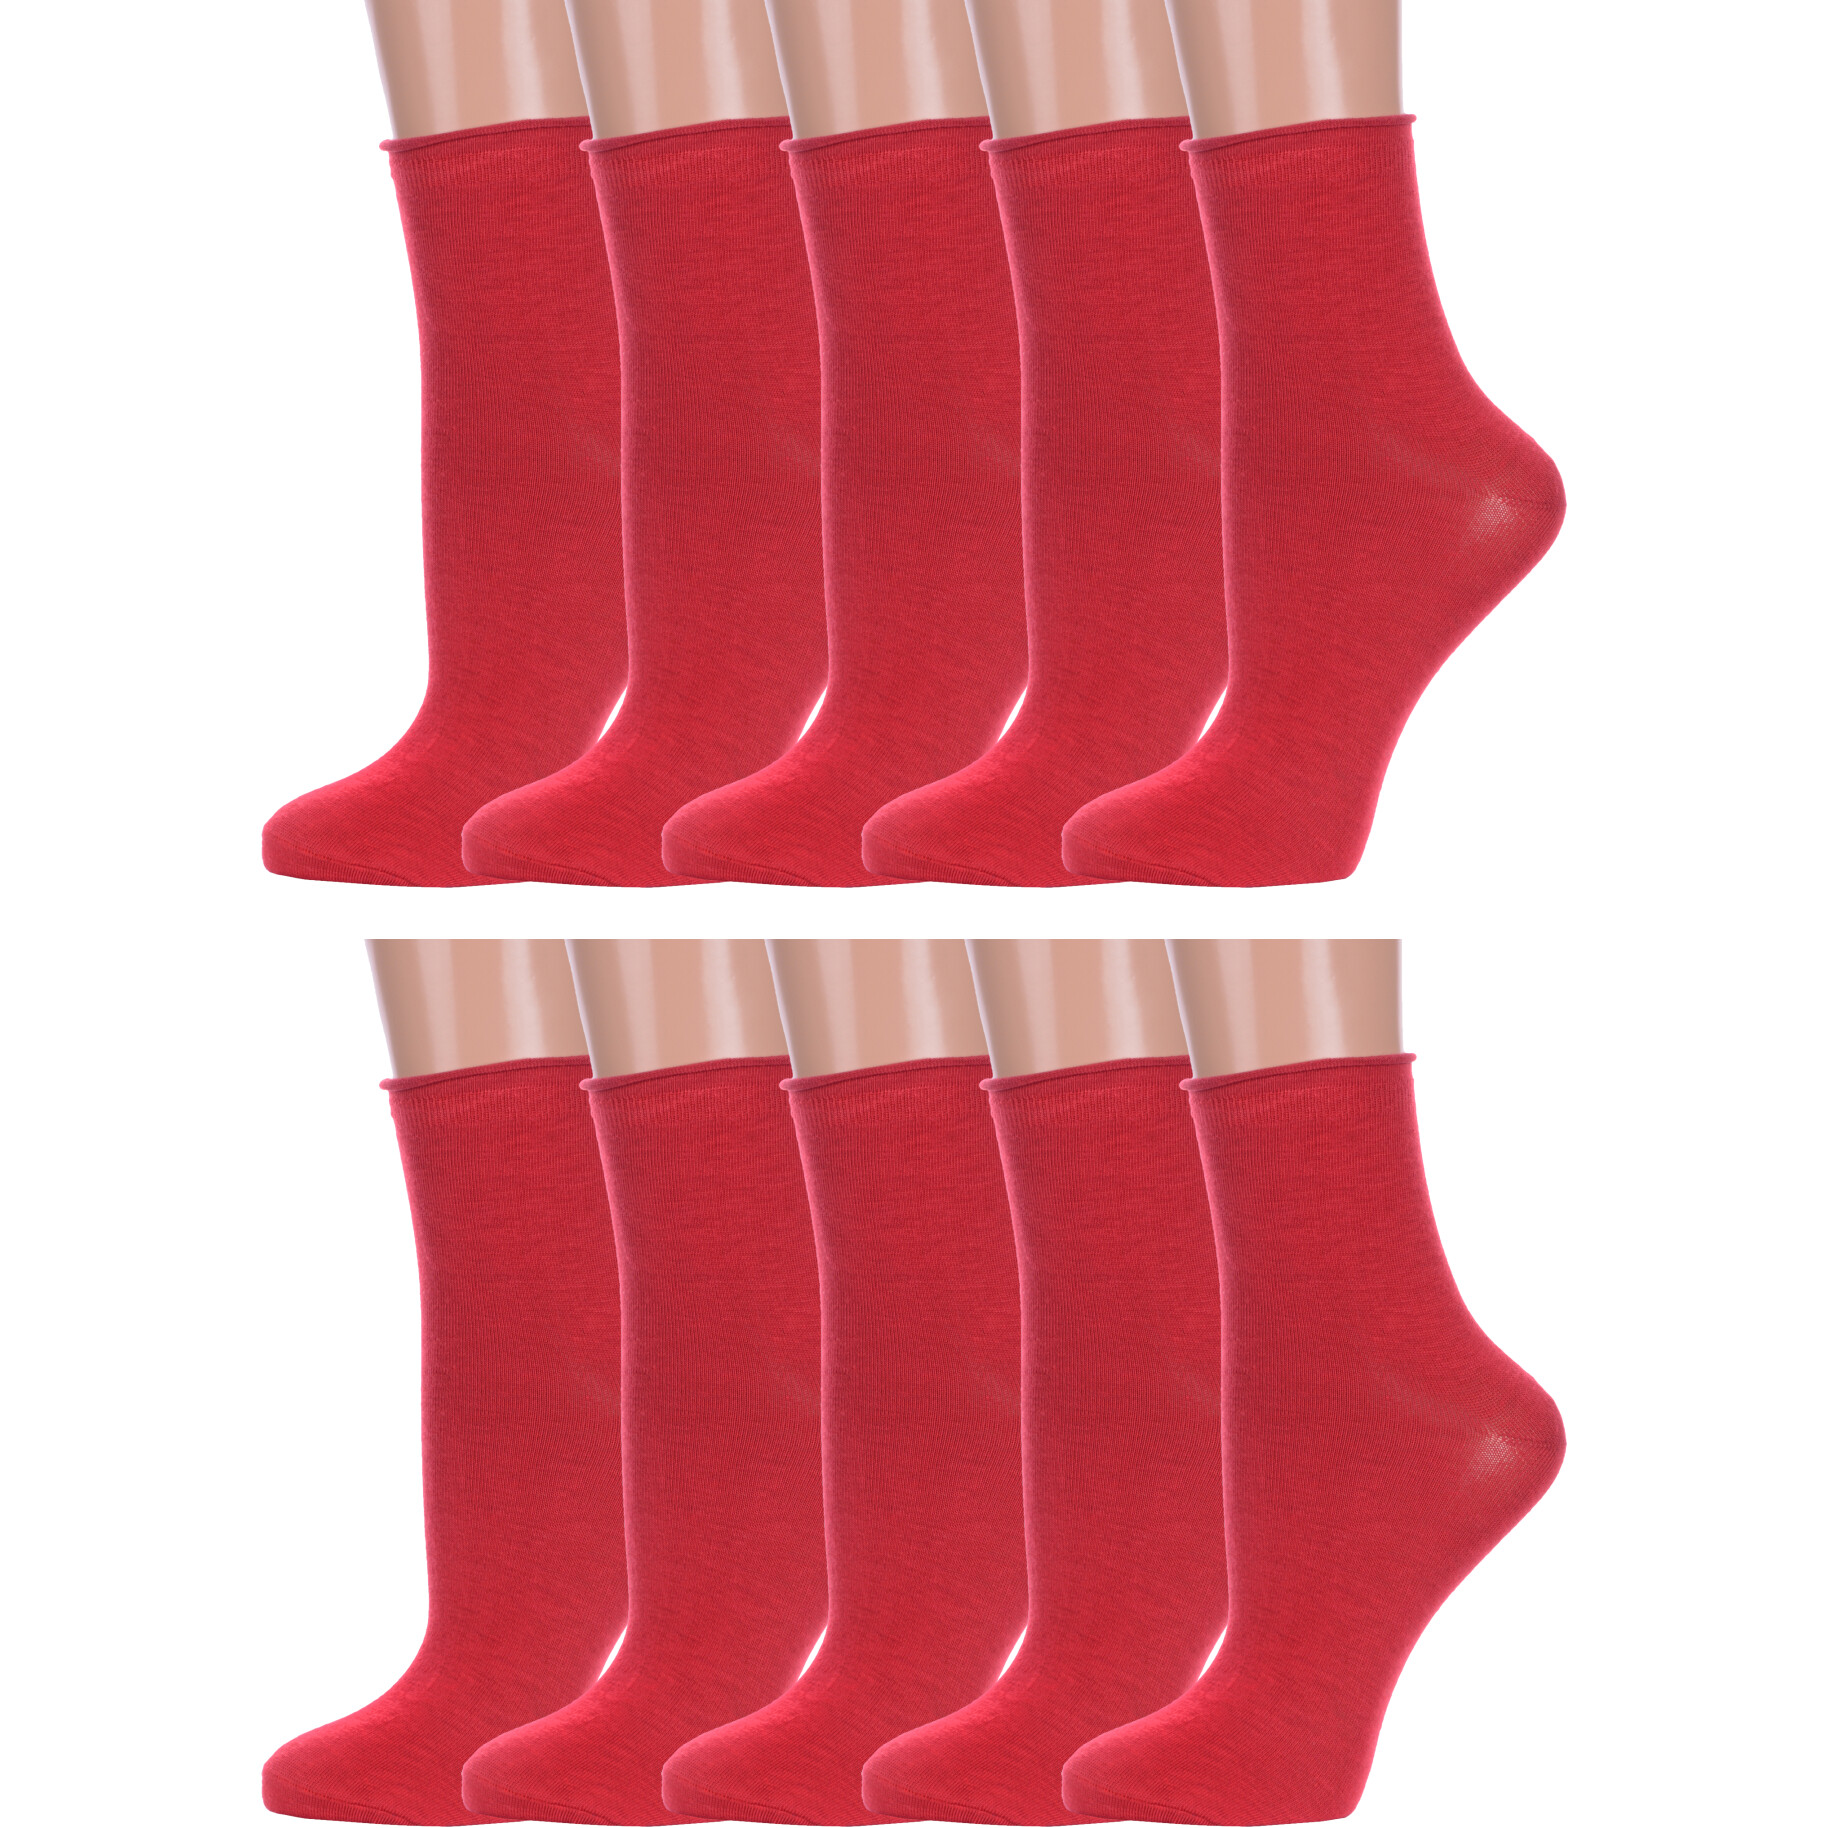 Комплект носков женских Hobby Line 10-Нжх бордовых 36-40, 10 пар